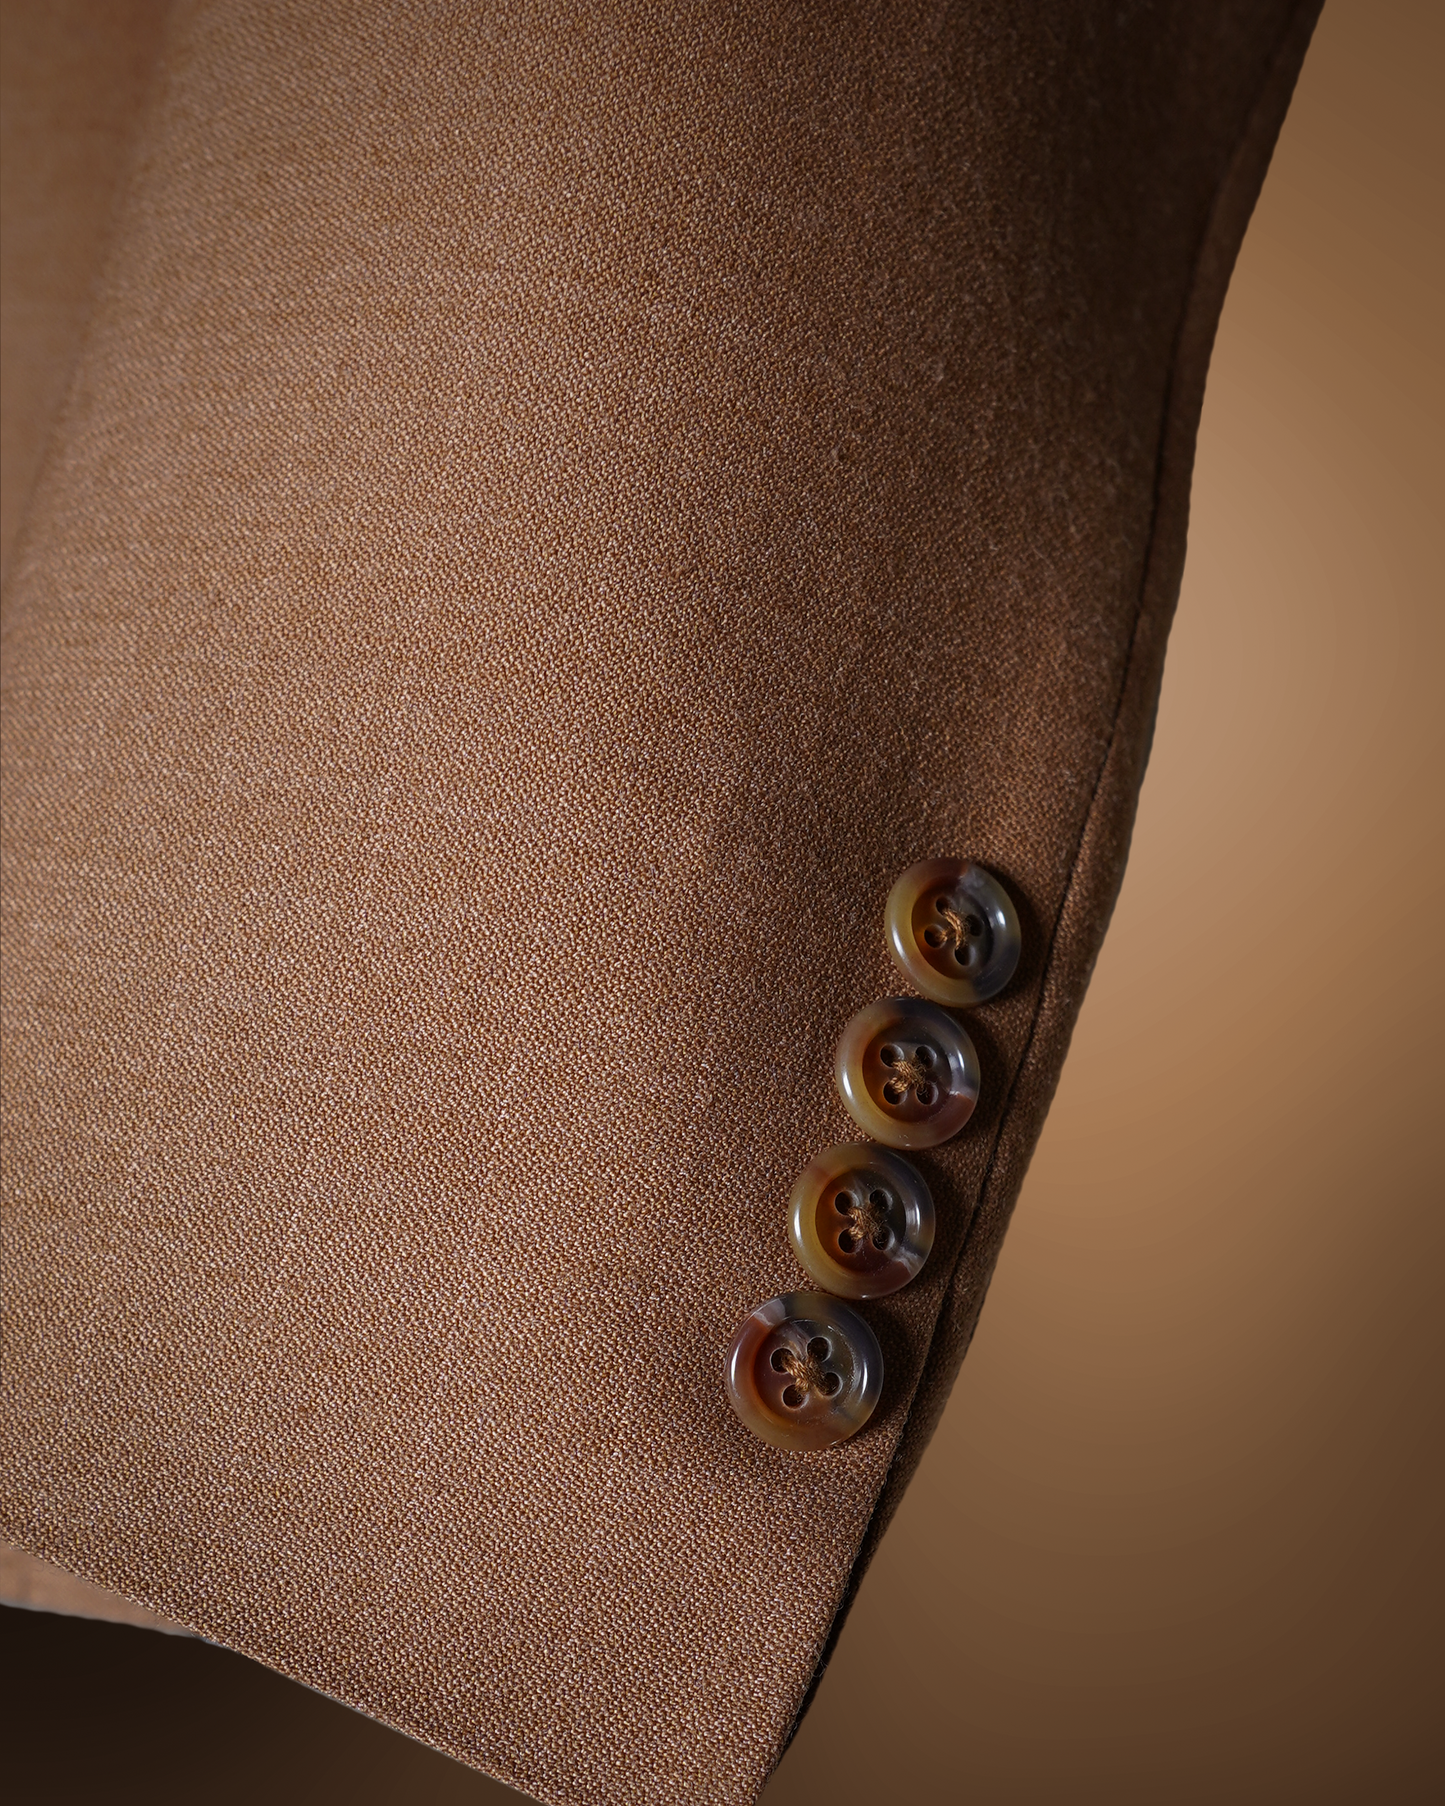 Caramel-Brown Bespoke Suit